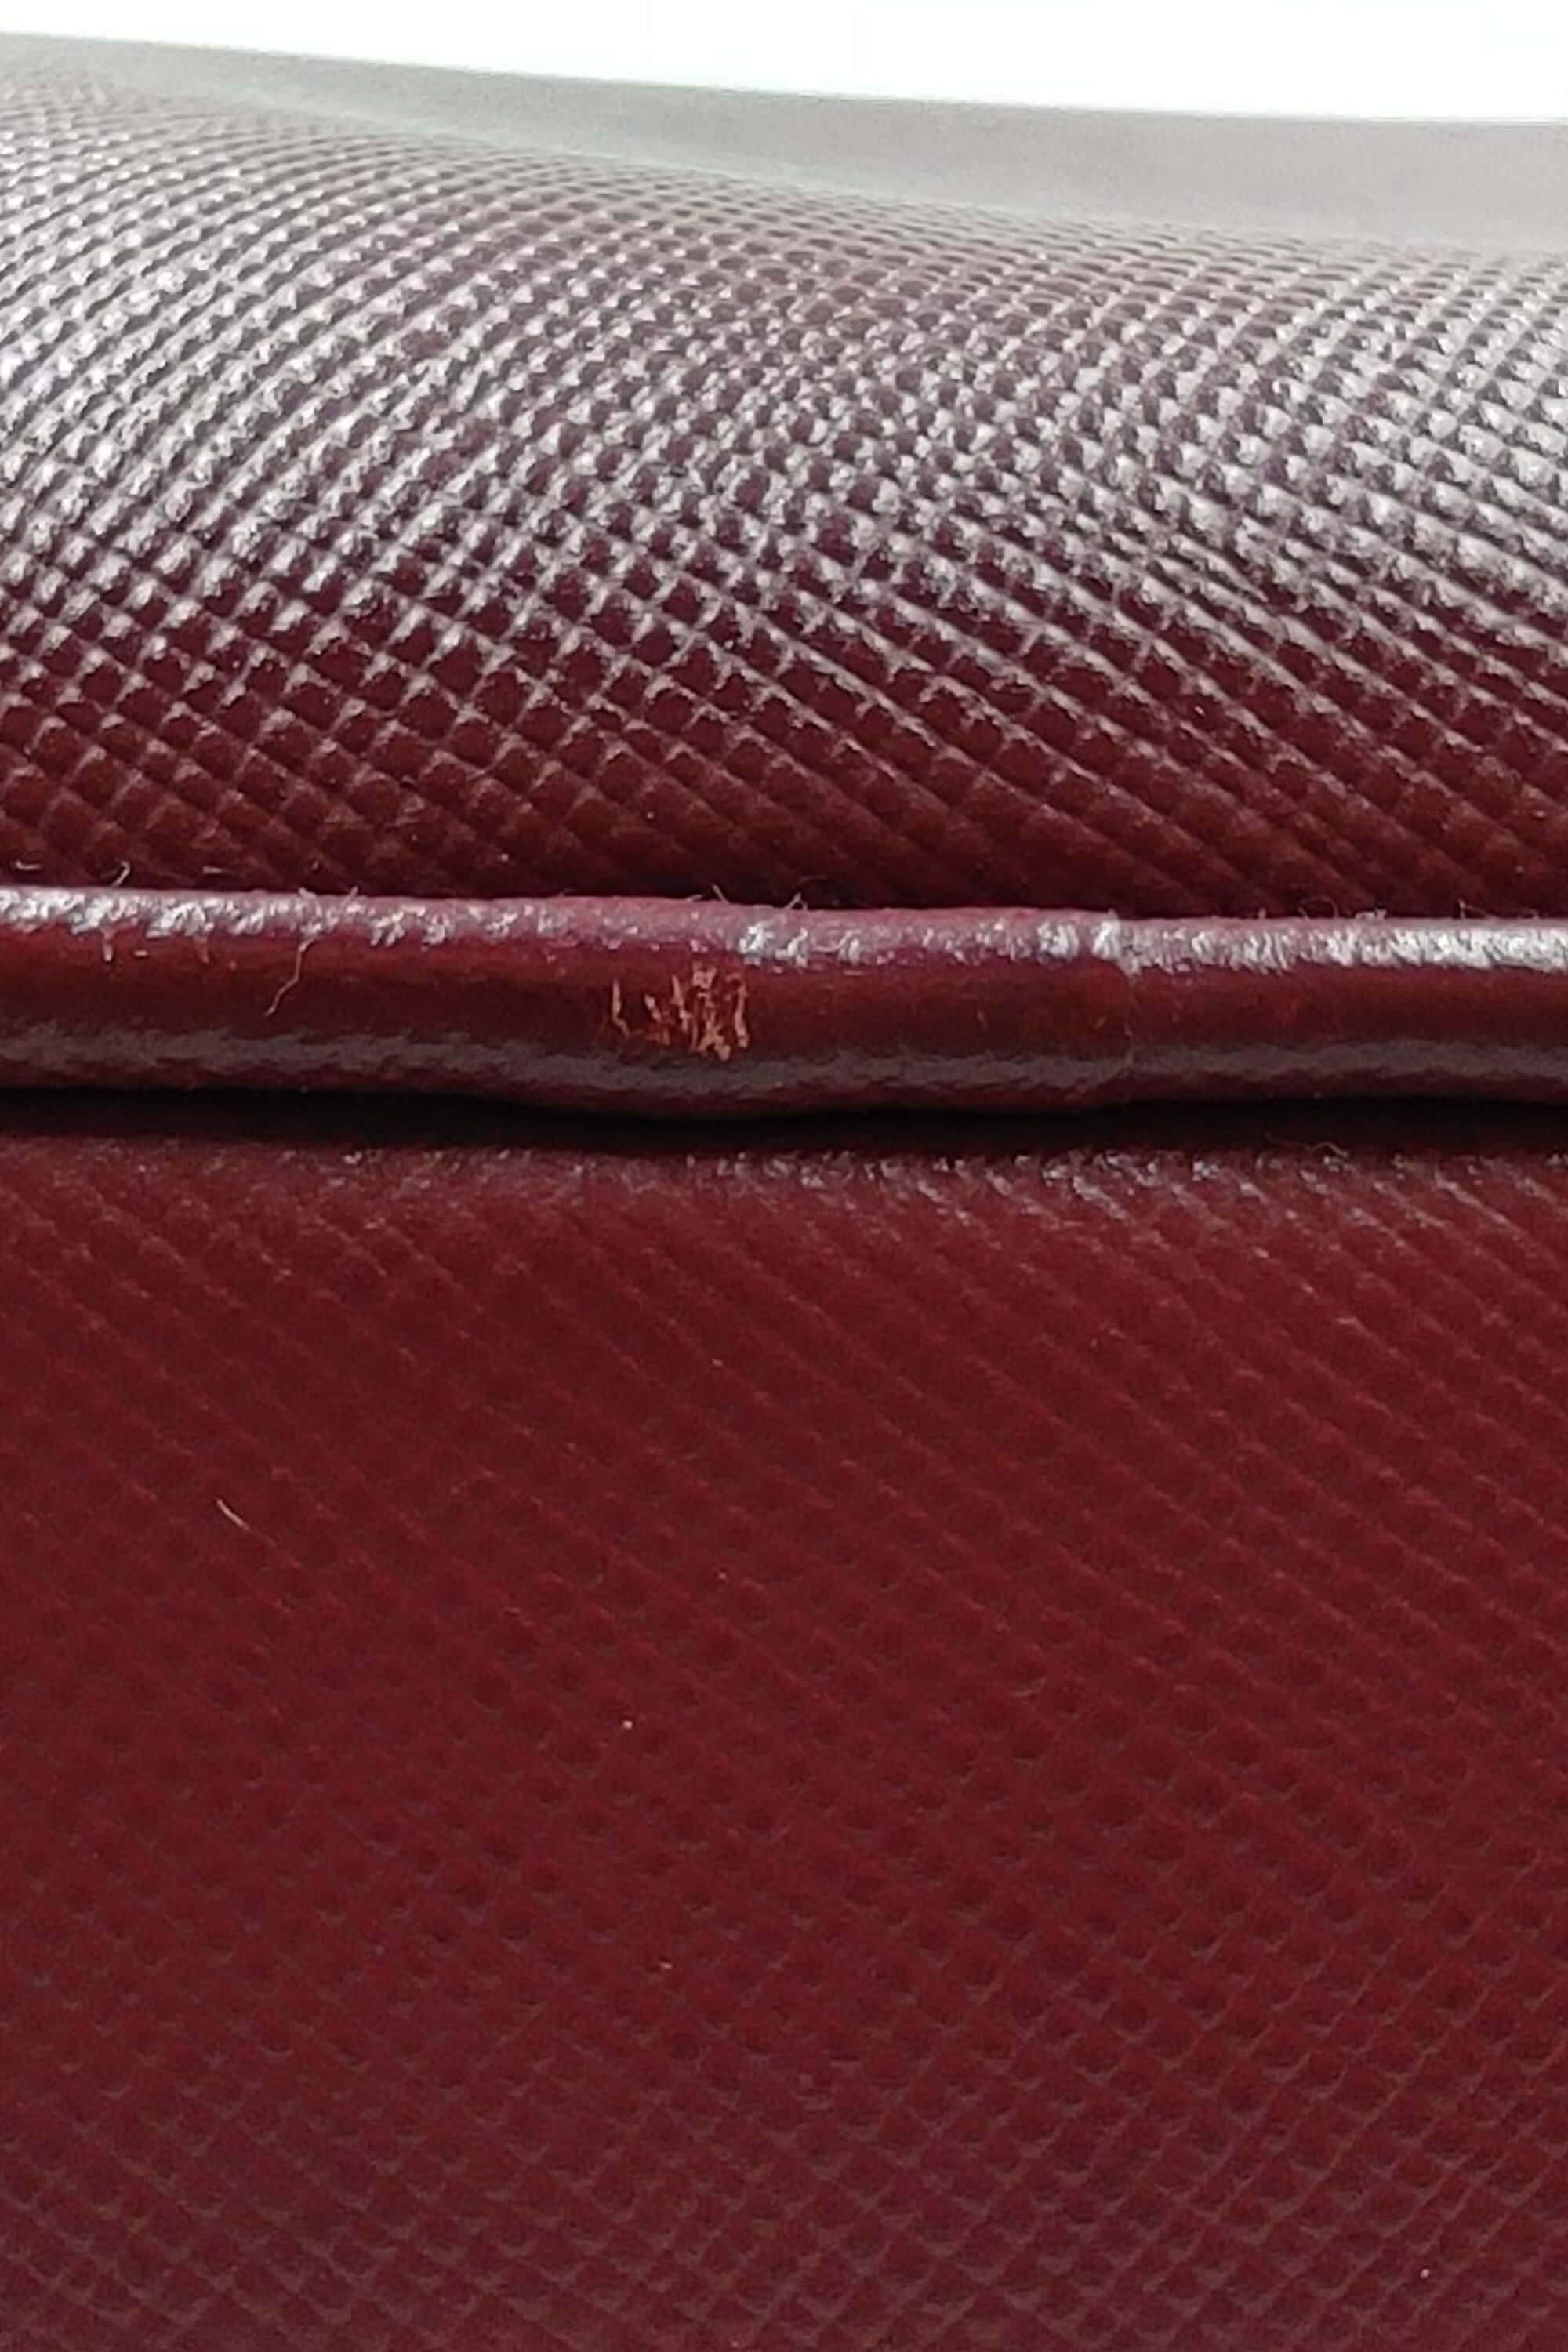 Red Prada Saffiano Lux Bauletto Handbag – Designer Revival